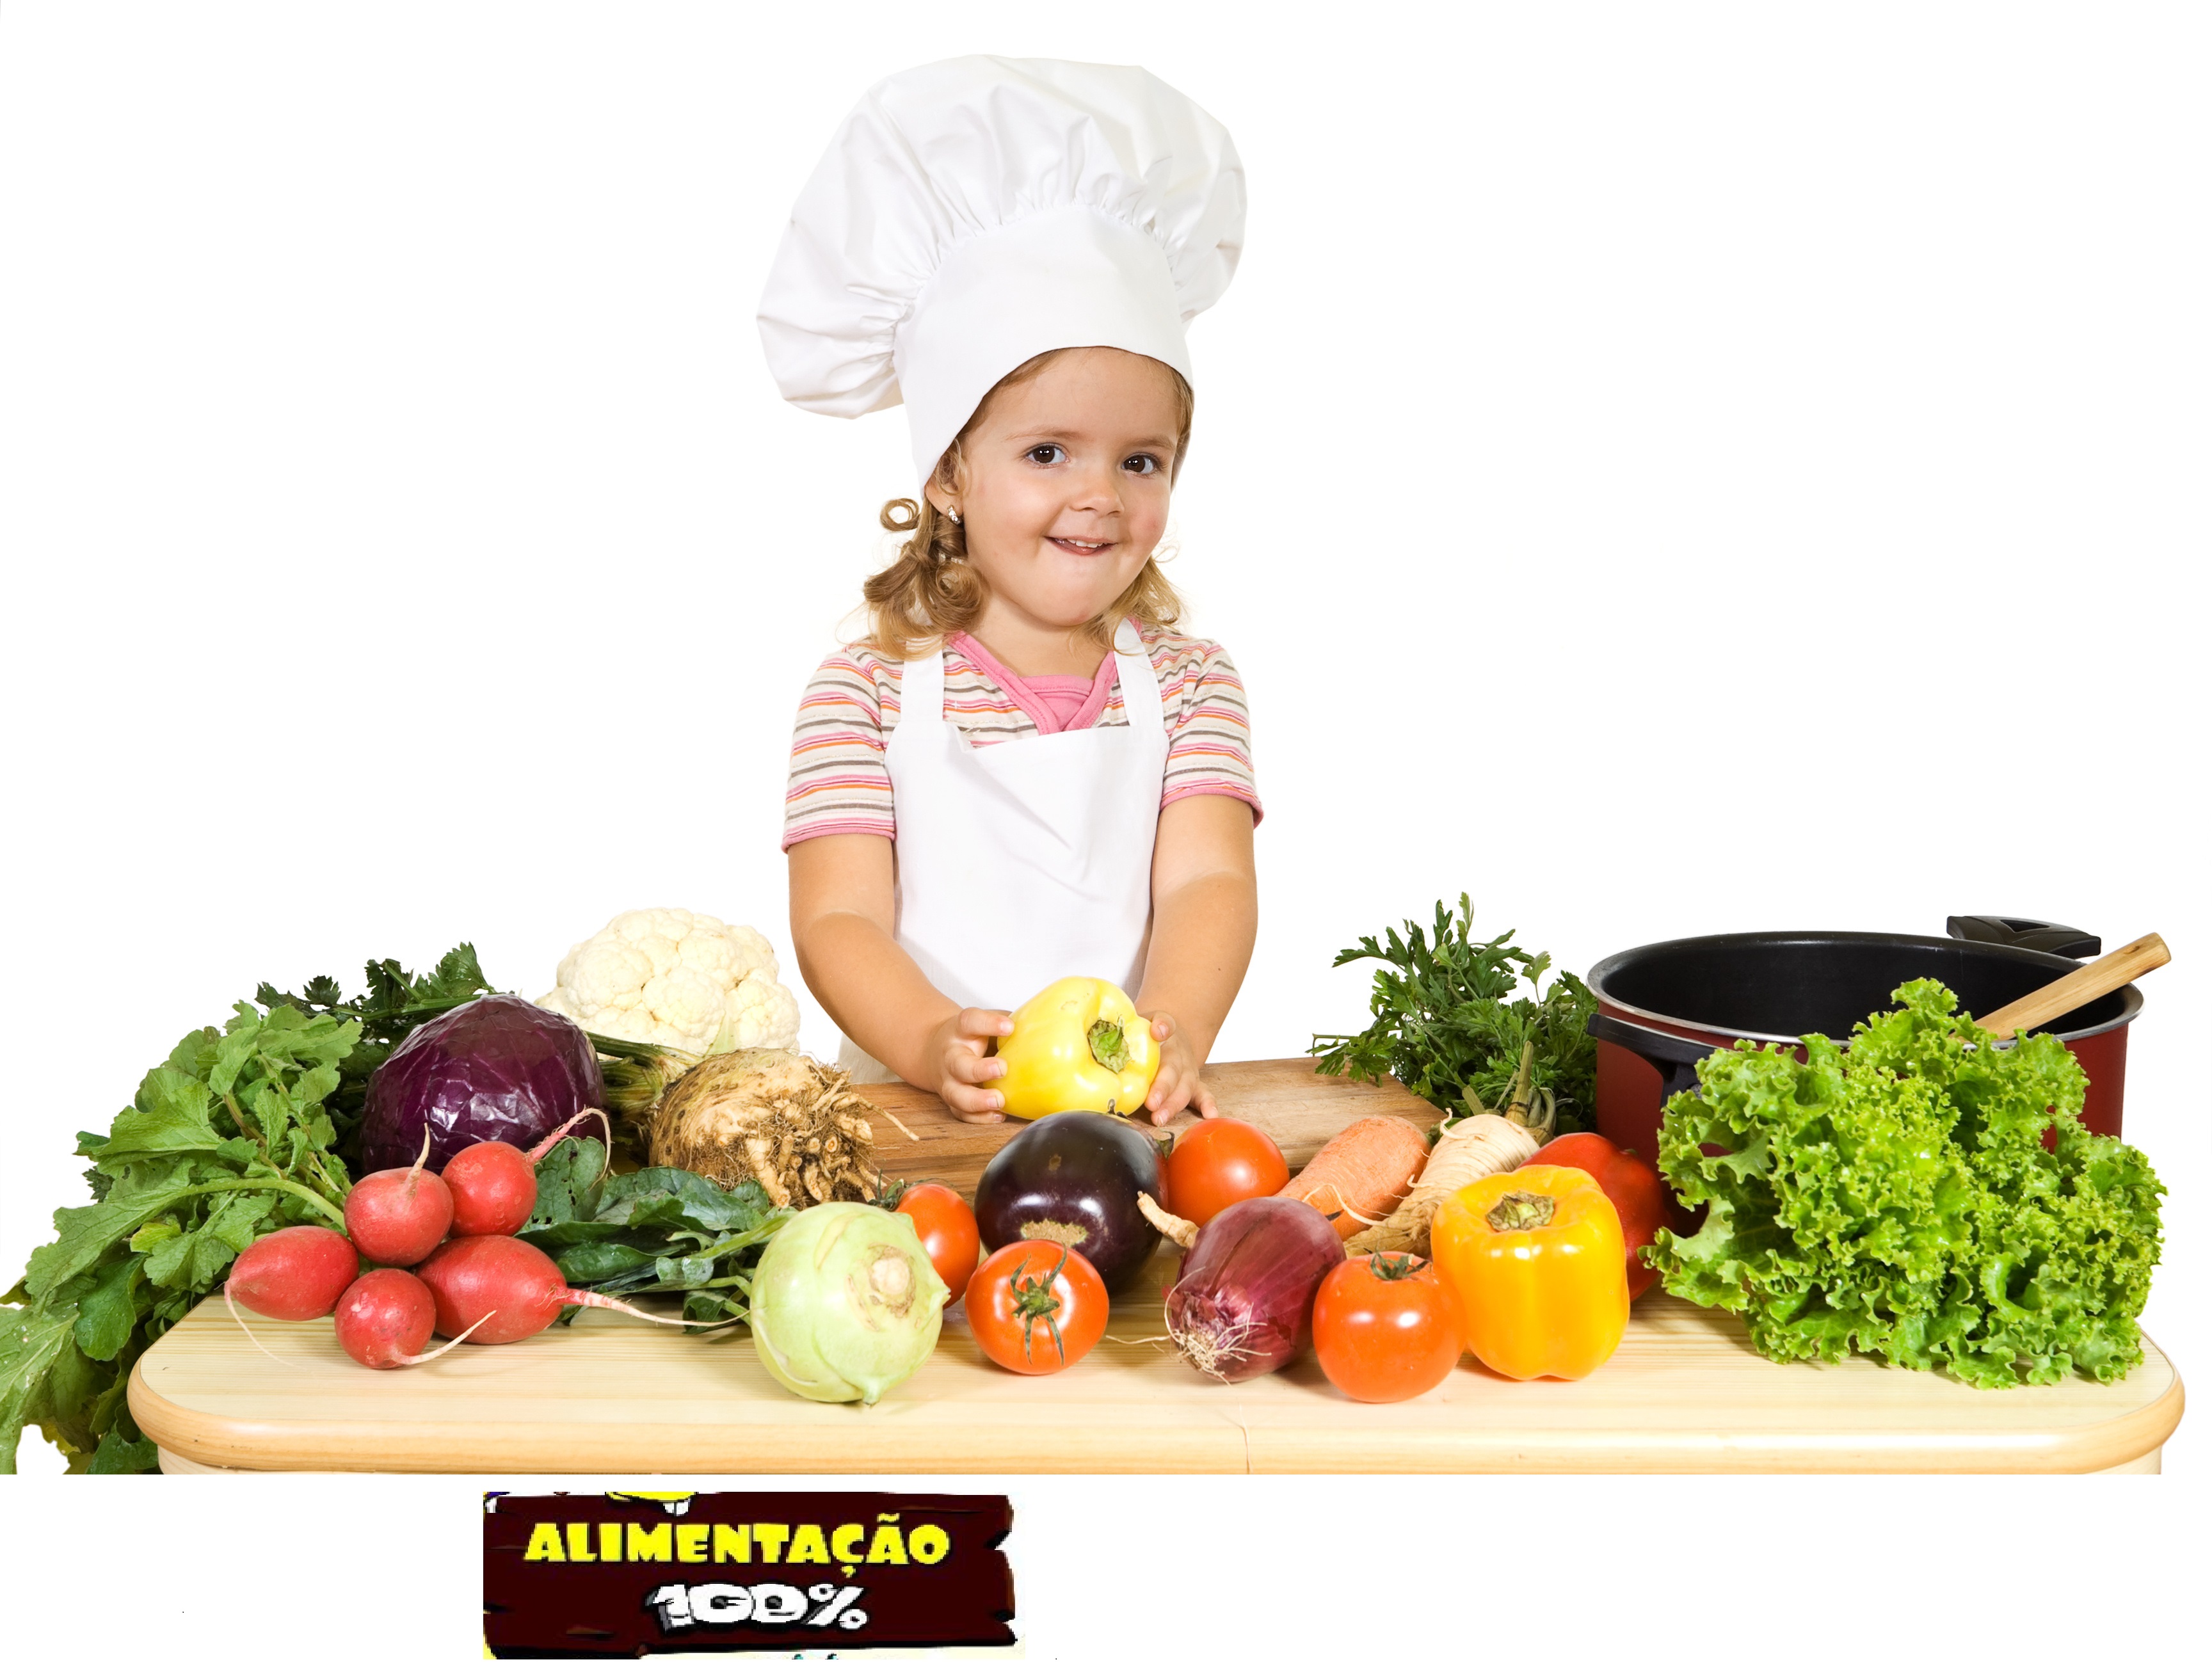 Полезные продукты для детей дошкольного возраста. Правильное питание для детей. Правильное питание для дошкольников. Здоровая еда для дошкольников. Здоровая еда в детском саду.